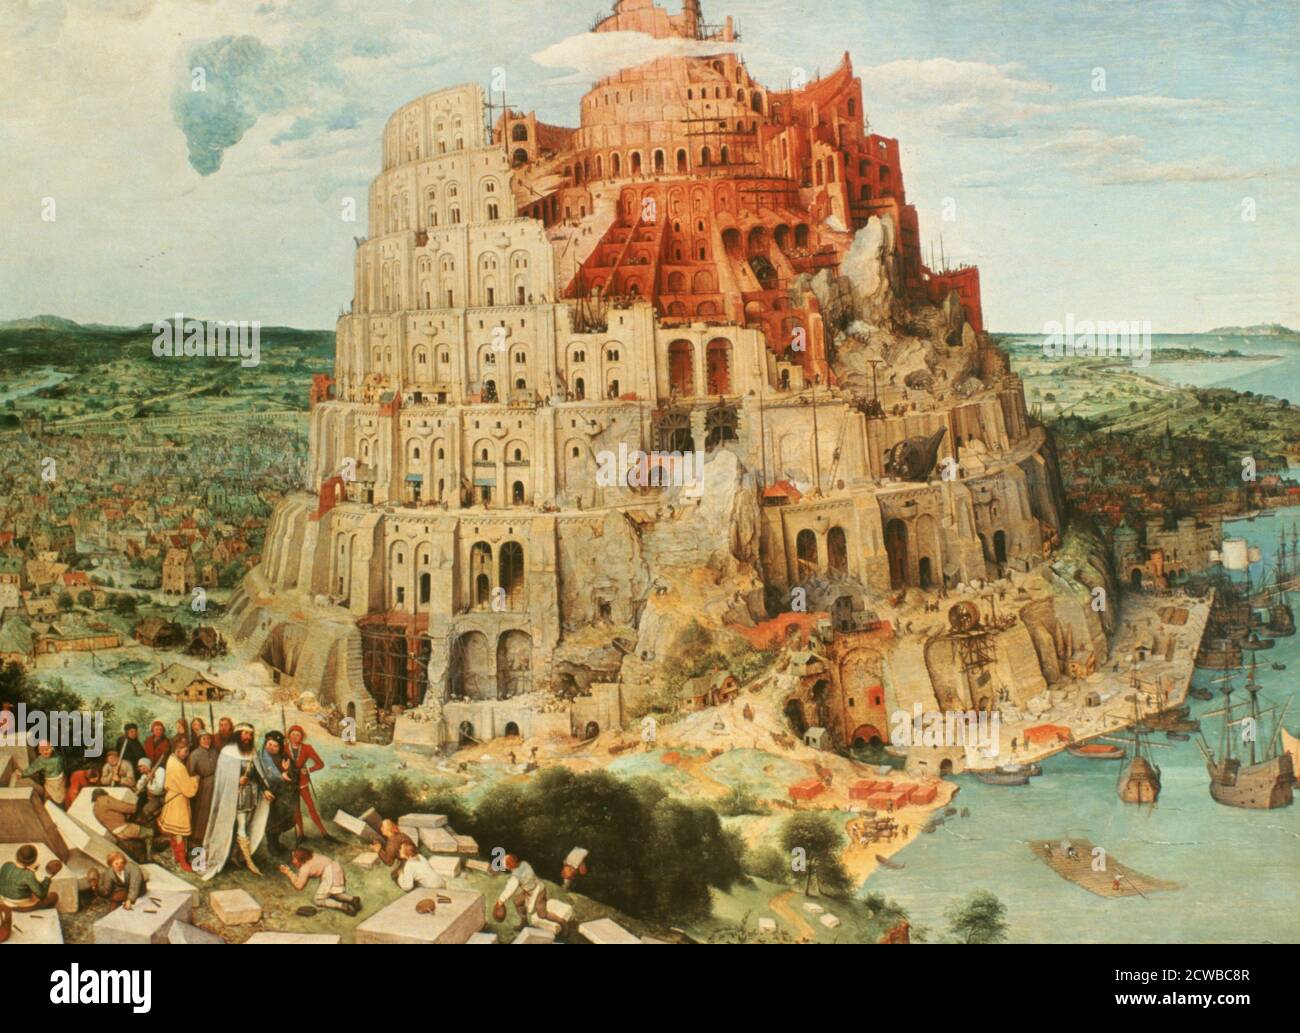 Pieter Bruegel der Ältere Gemälde mit dem Titel 'Turm zu Babel', 1563. Der Turm wurde von einer vereinten Menschheit in einem Versuch, den Himmel zu erreichen gebaut. Teil der Sammlung des Kunsthistorischen Museums, Wien, Österreich. Stockfoto